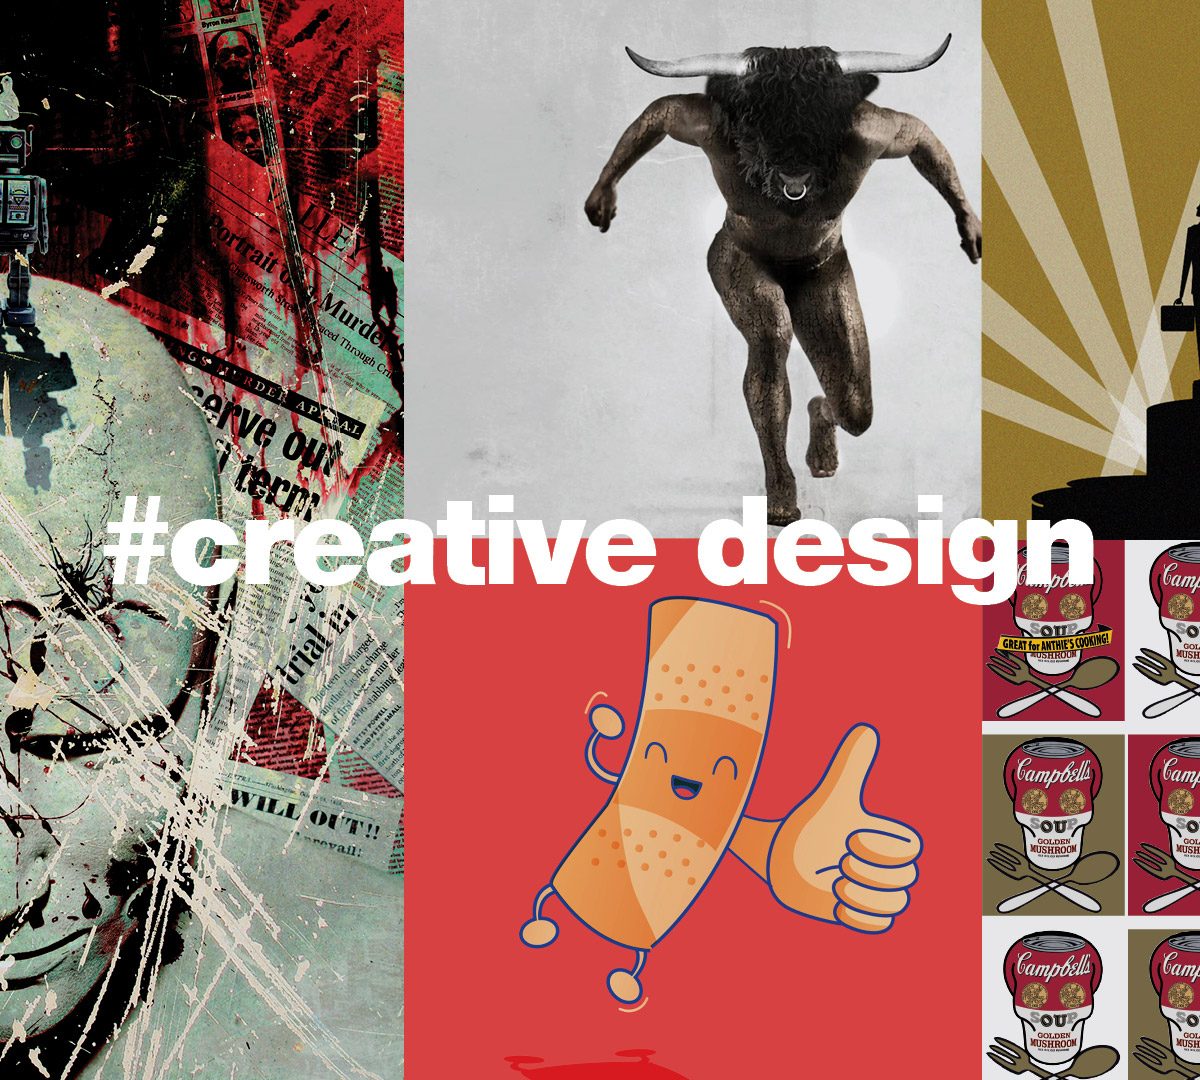 Design Agency. Advertising | Creative Design | SEO